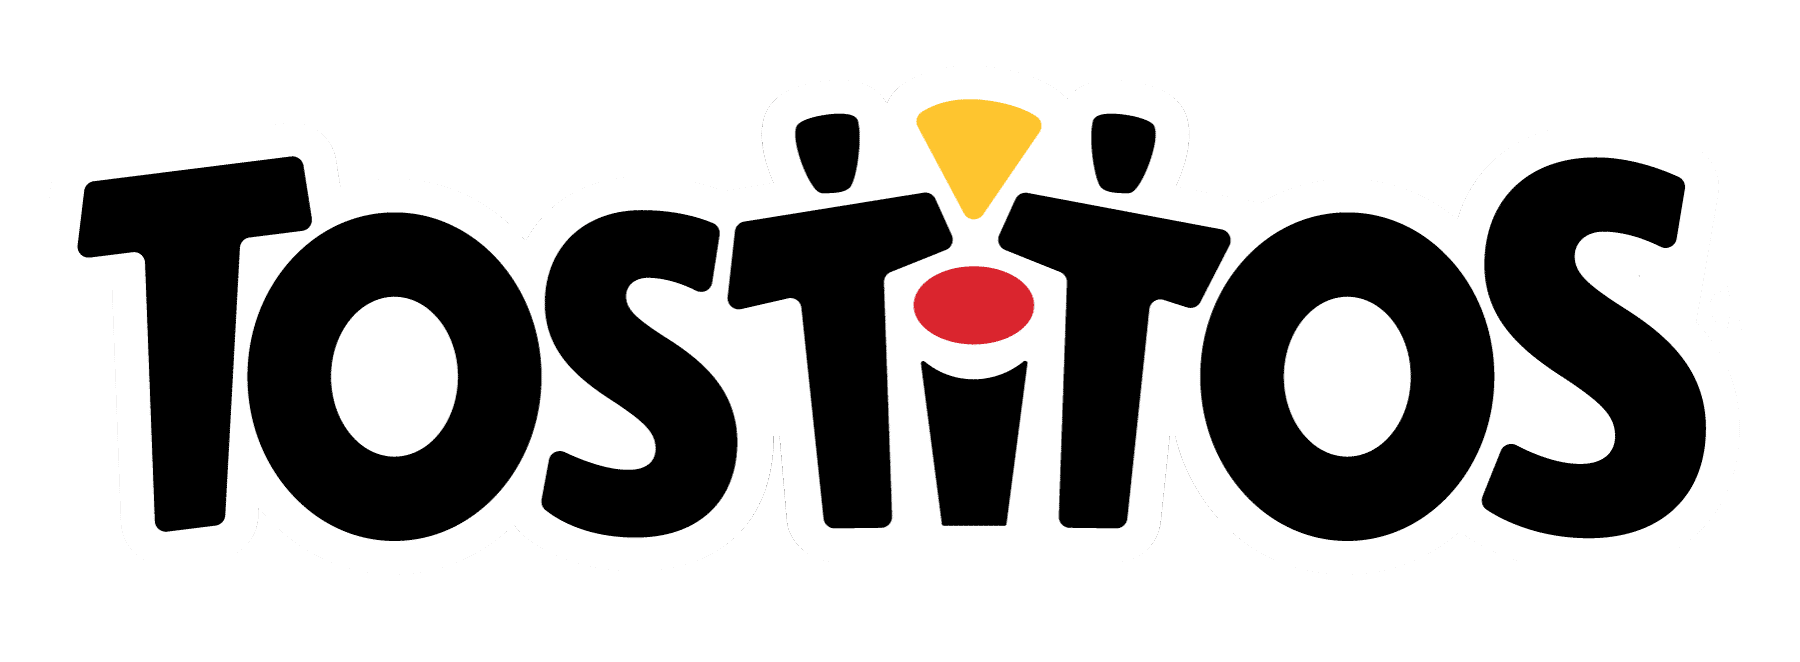 Tostitos.ca logo